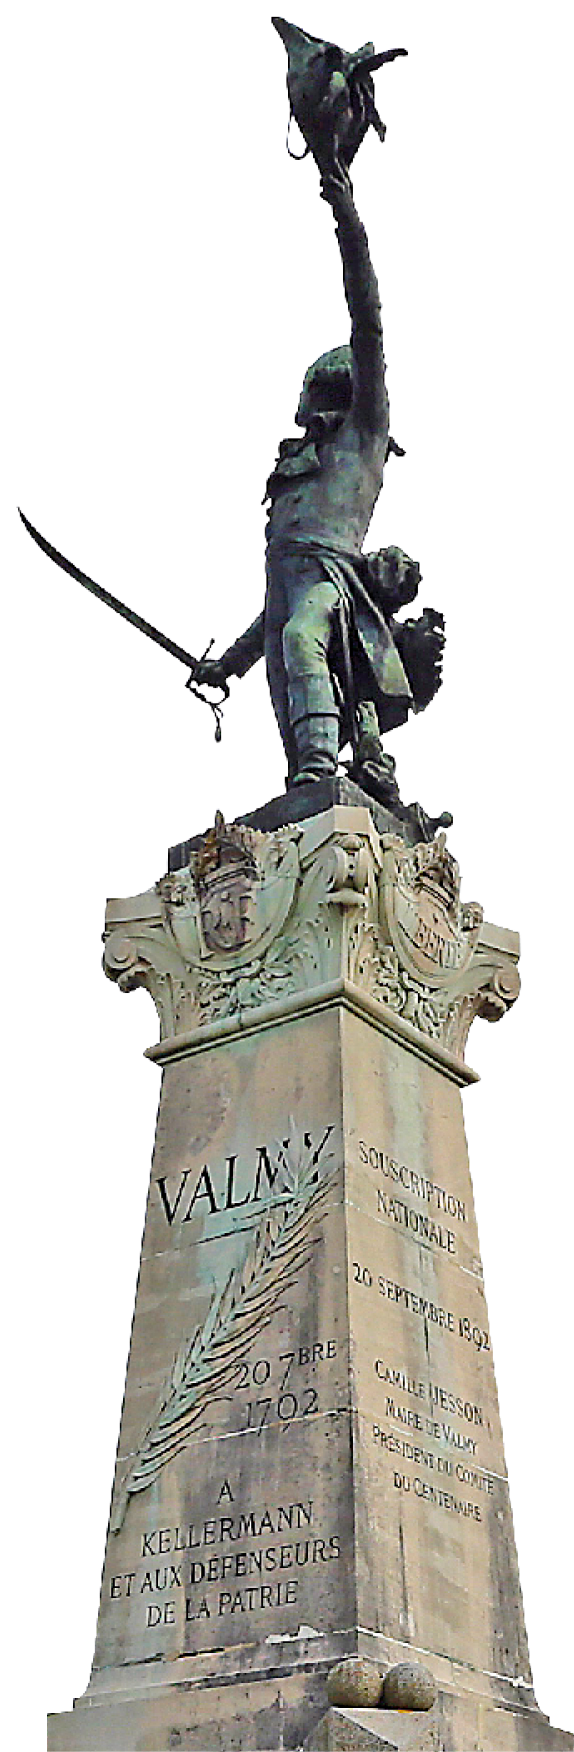 Fotografia. Monumento em pedra com uma estátua de bronze no topo. Ele tem inscrições em francês em sua superfície. A parte de cima é ornamentada. A estátua representa uma pessoa segurando uma espada com uma mão e erguendo o chapéu com outra.